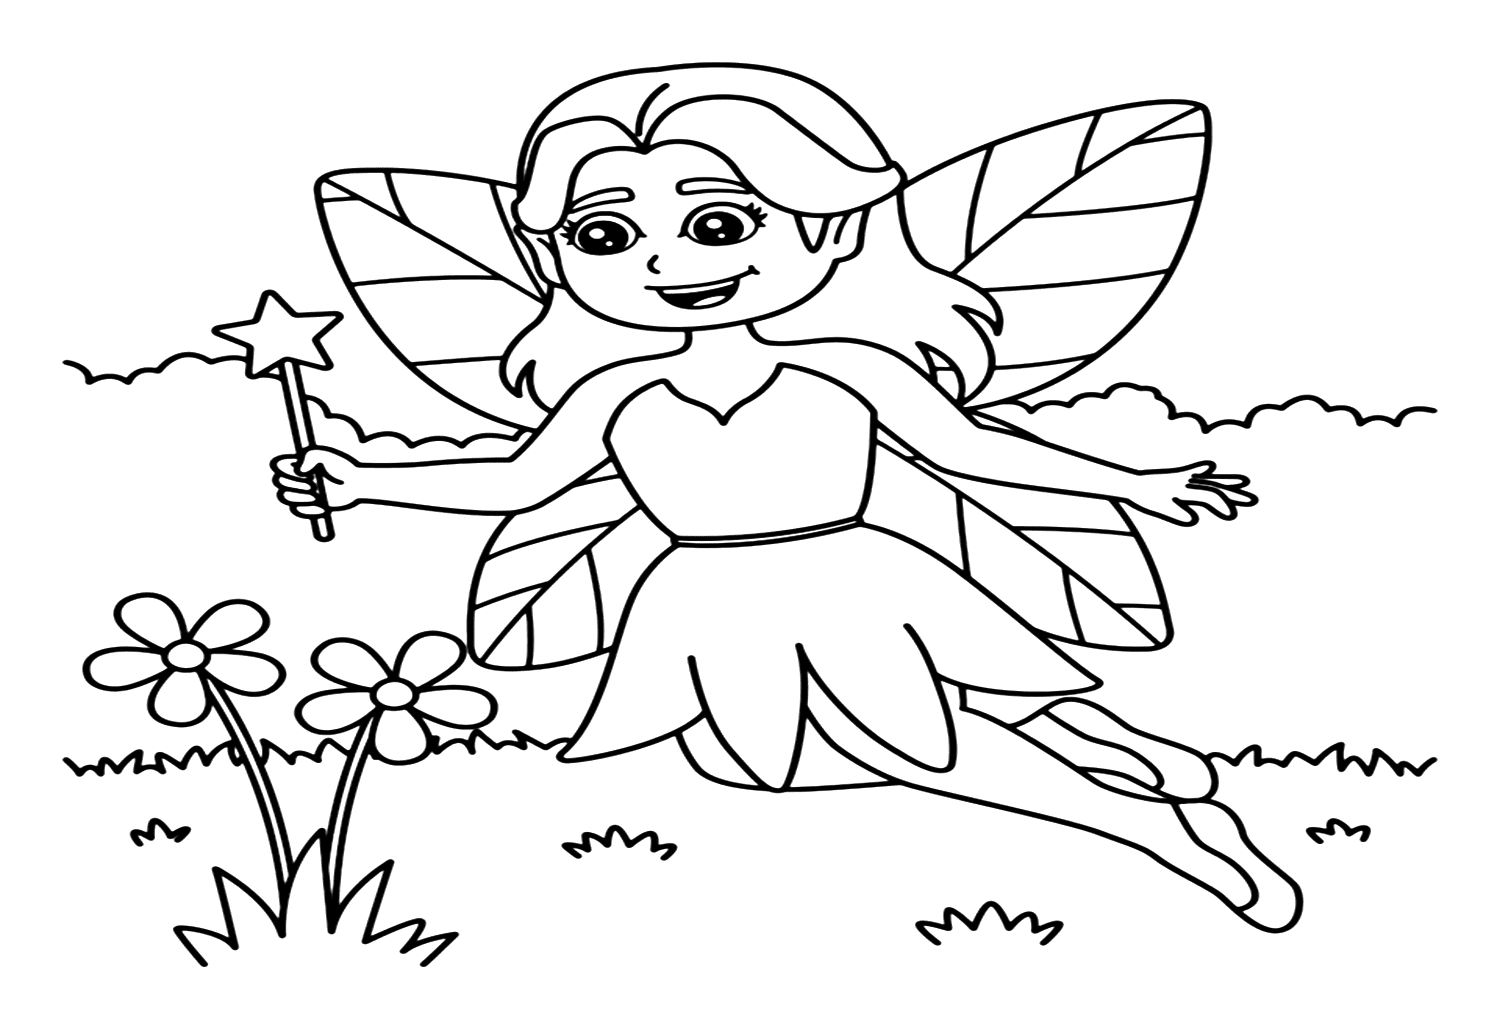 Páginas para colorear de hadas gratis de Fairy